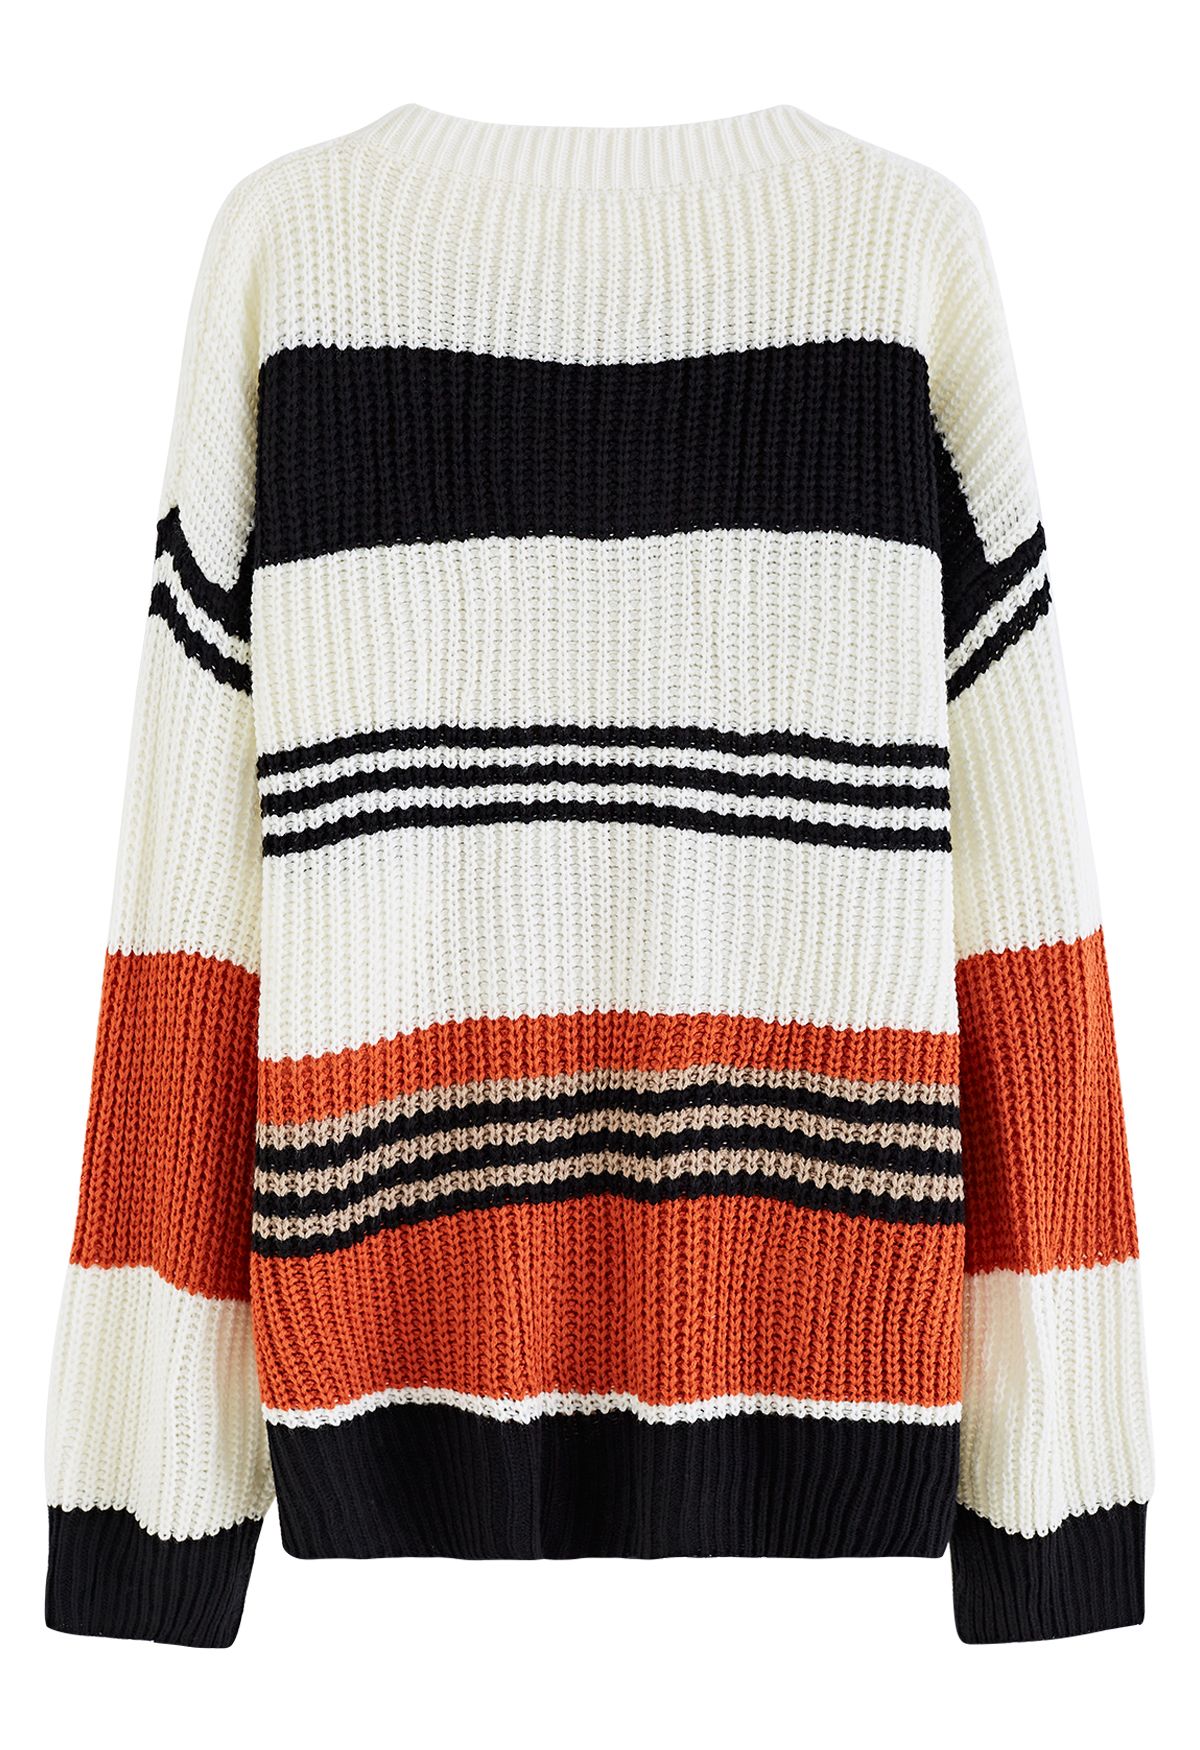 Suéter extragrande de punto grueso con rayas de varios colores